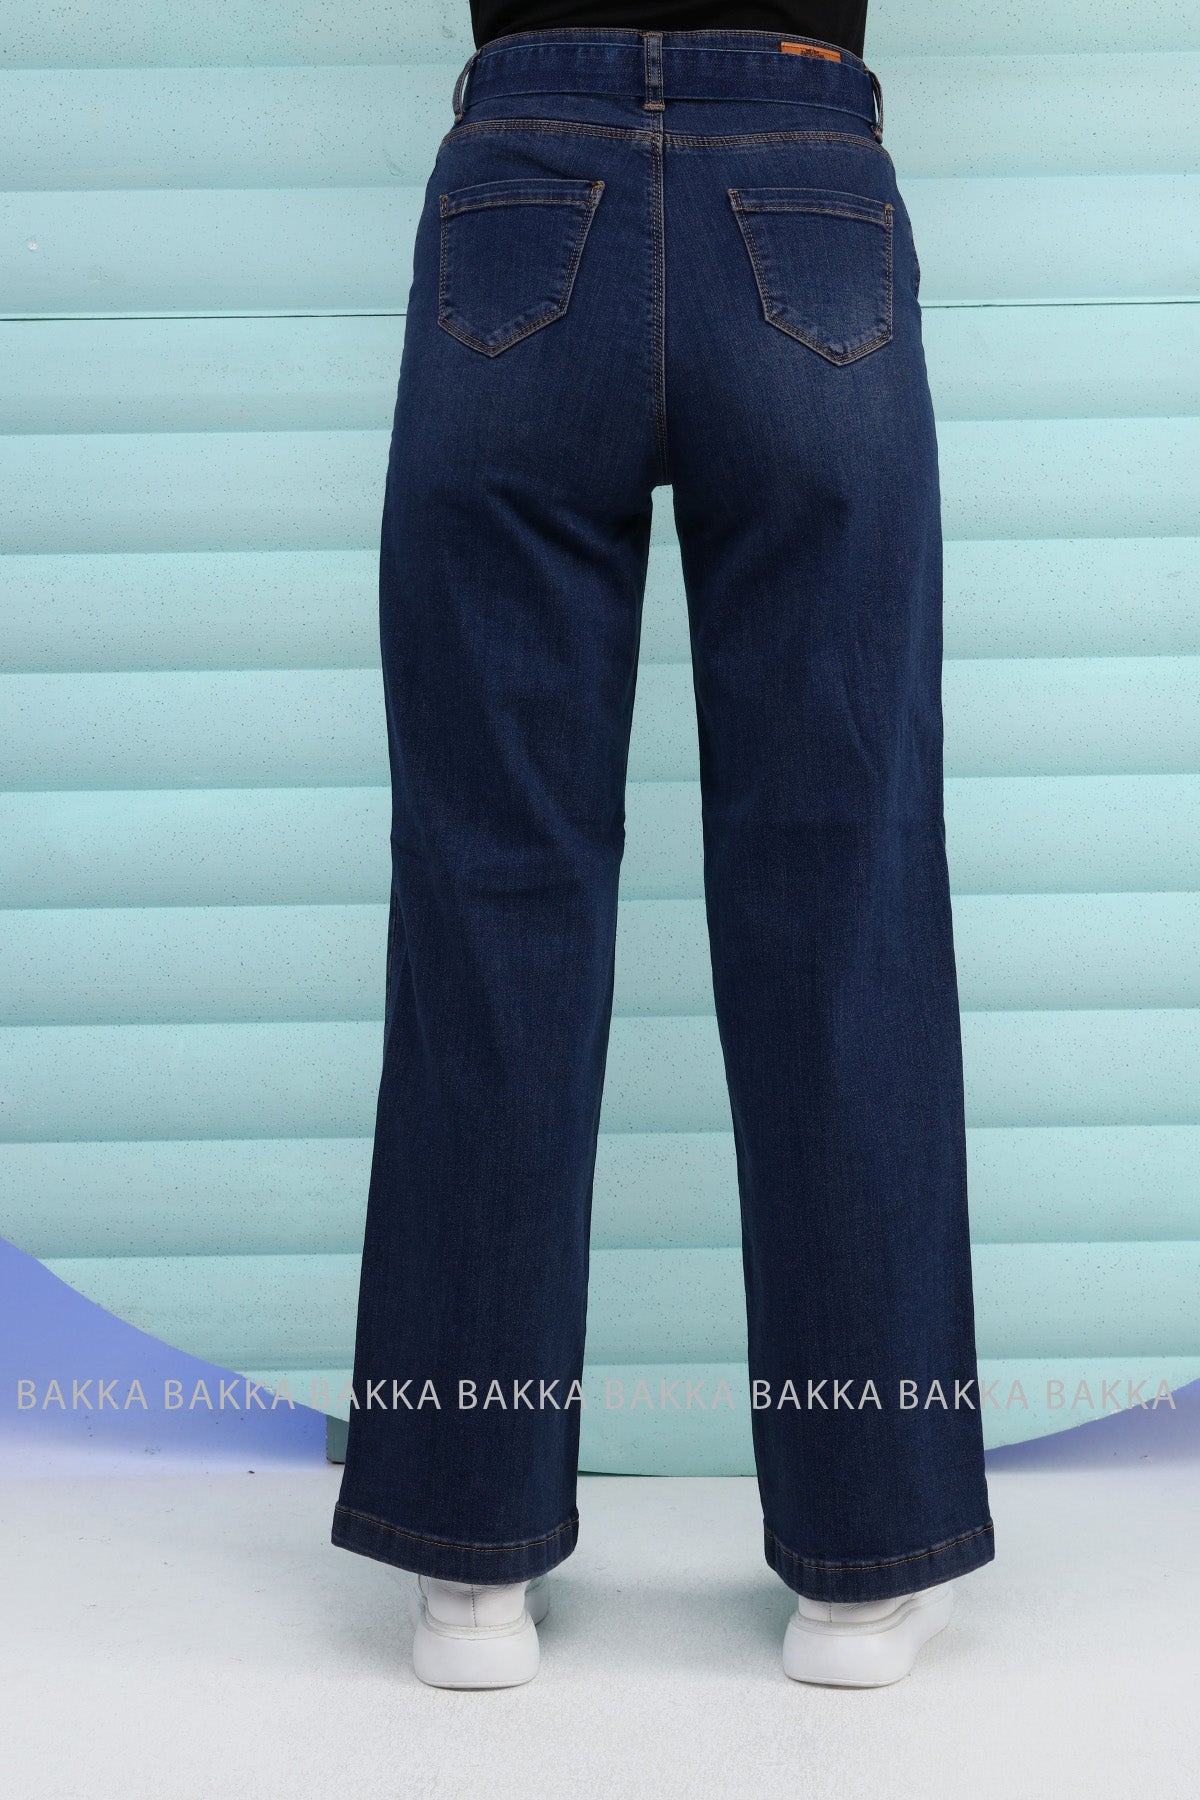 Jeans -9116- dark blue